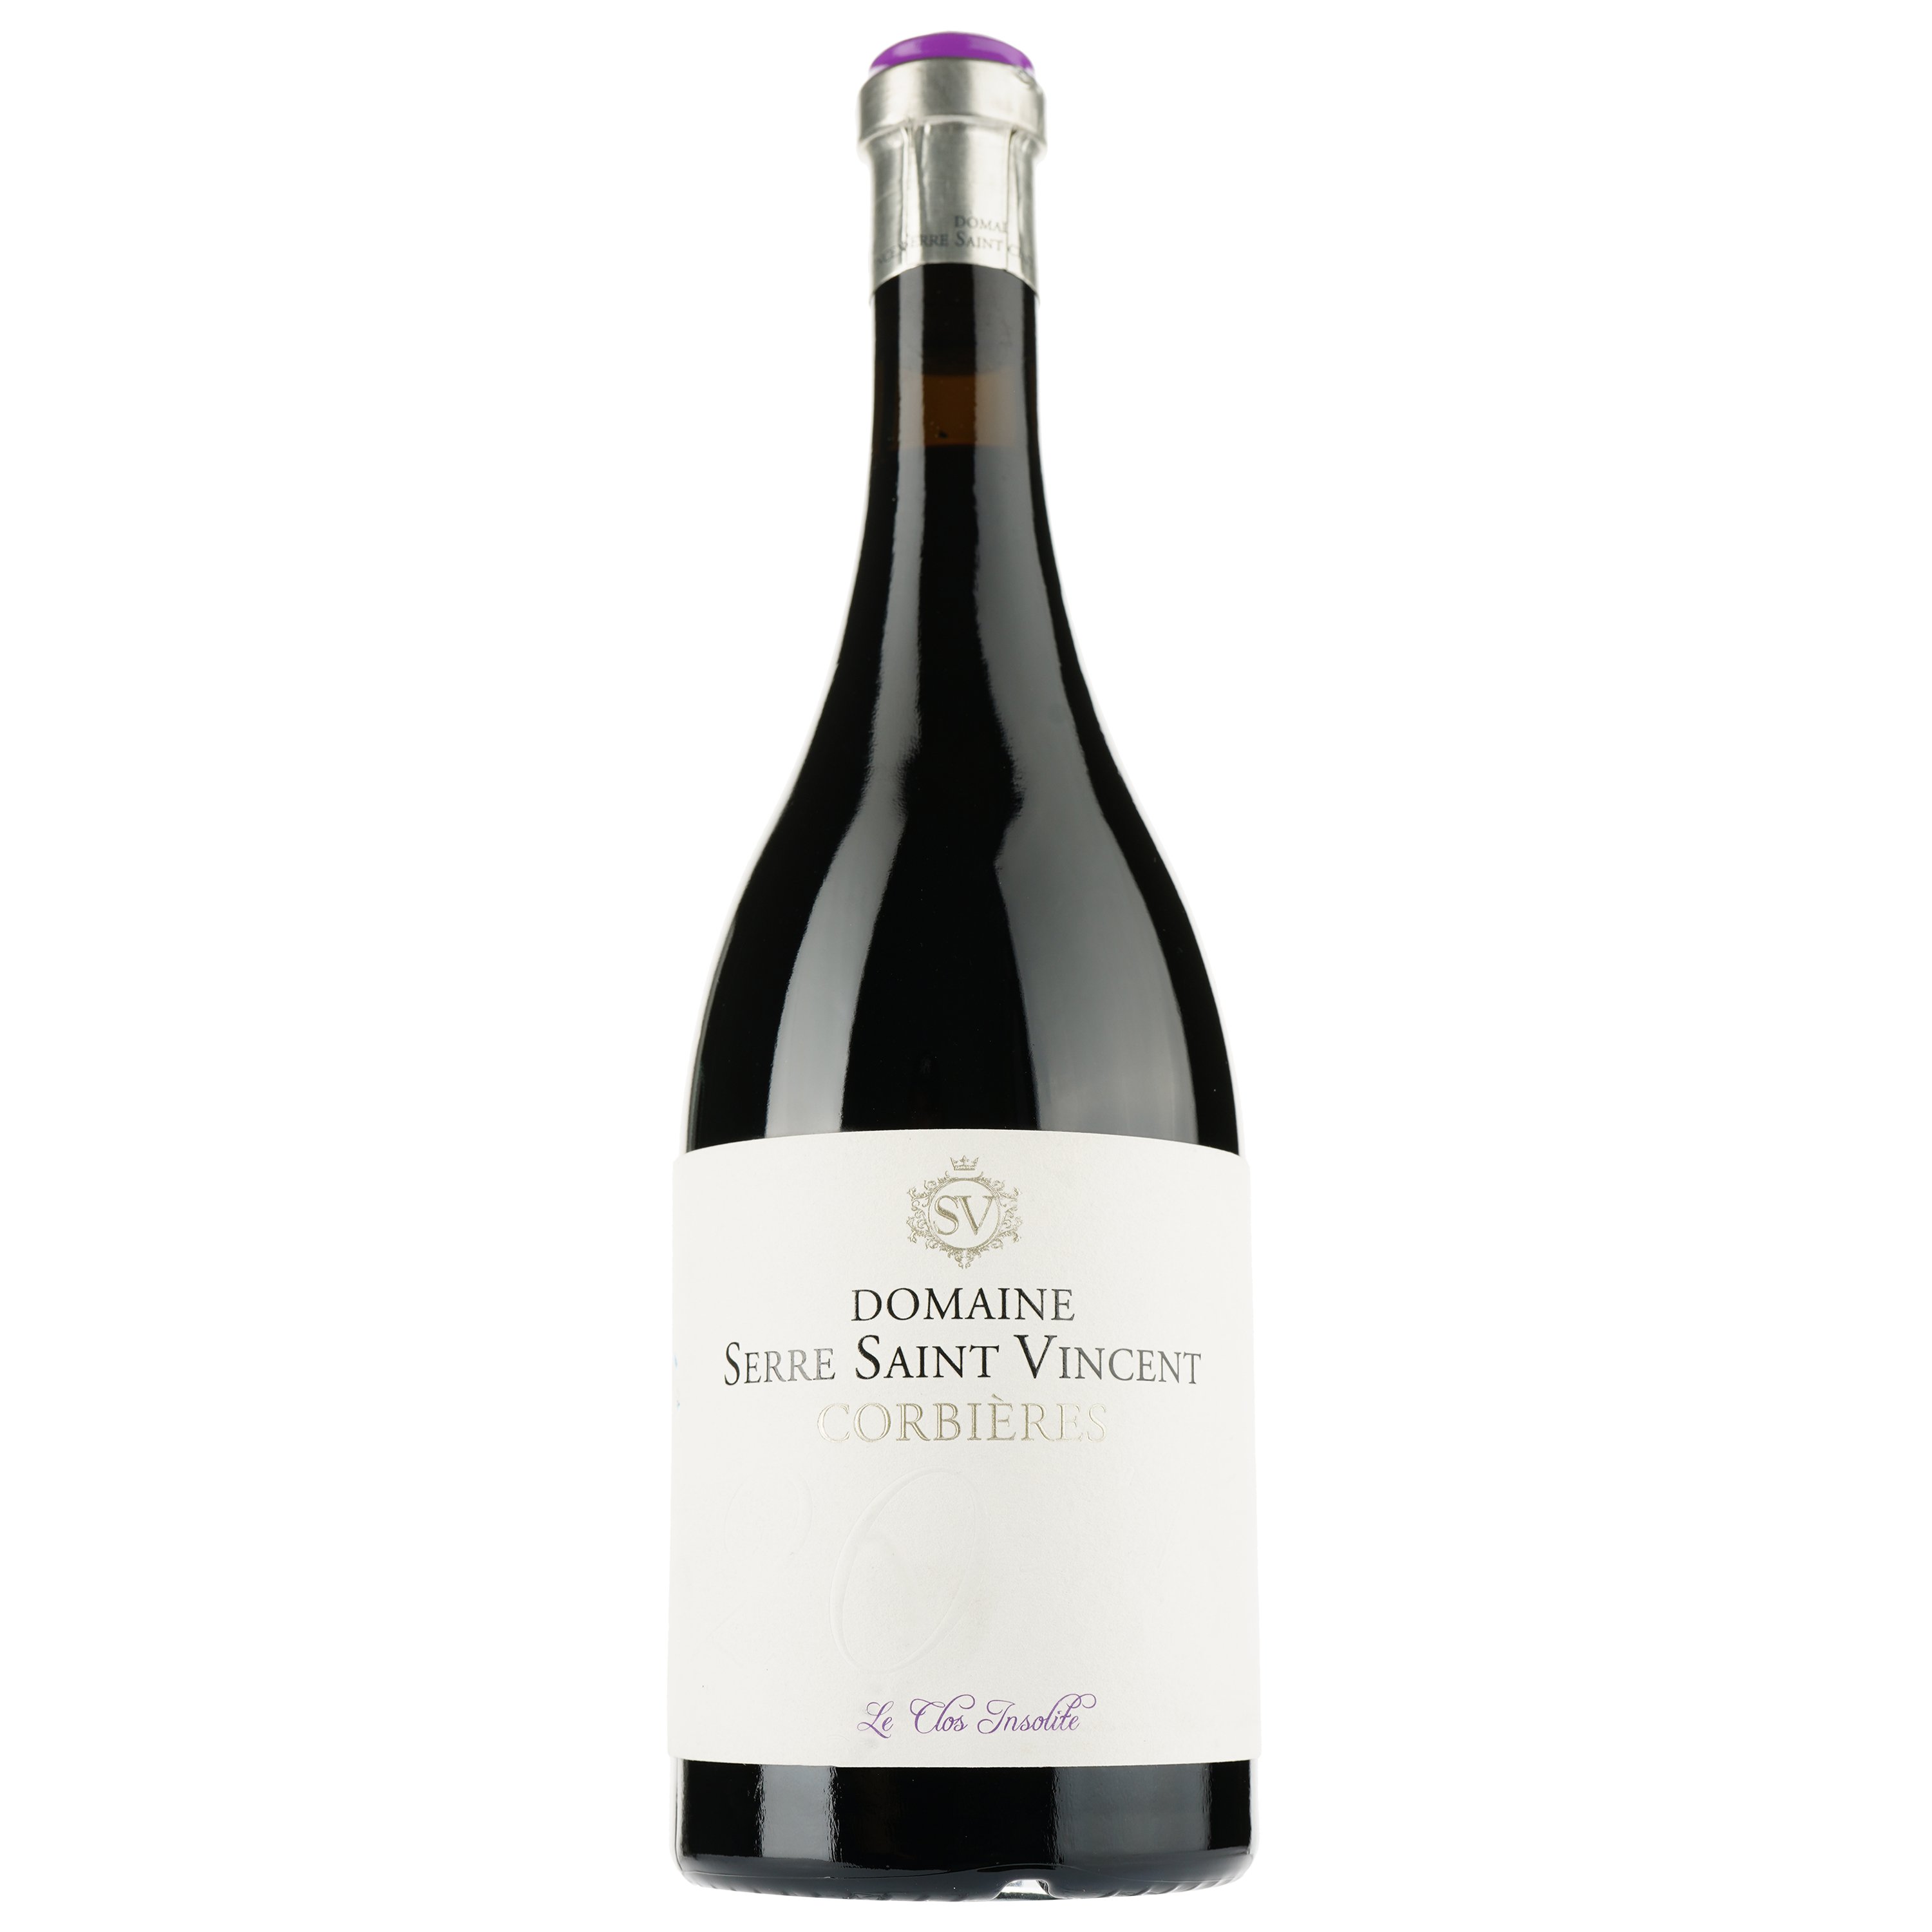 Вино Domaine Serre Saint Vincent Le Clos Insolite 2016 AOP Corbieres, червоне, сухе, 0,75 л - фото 1